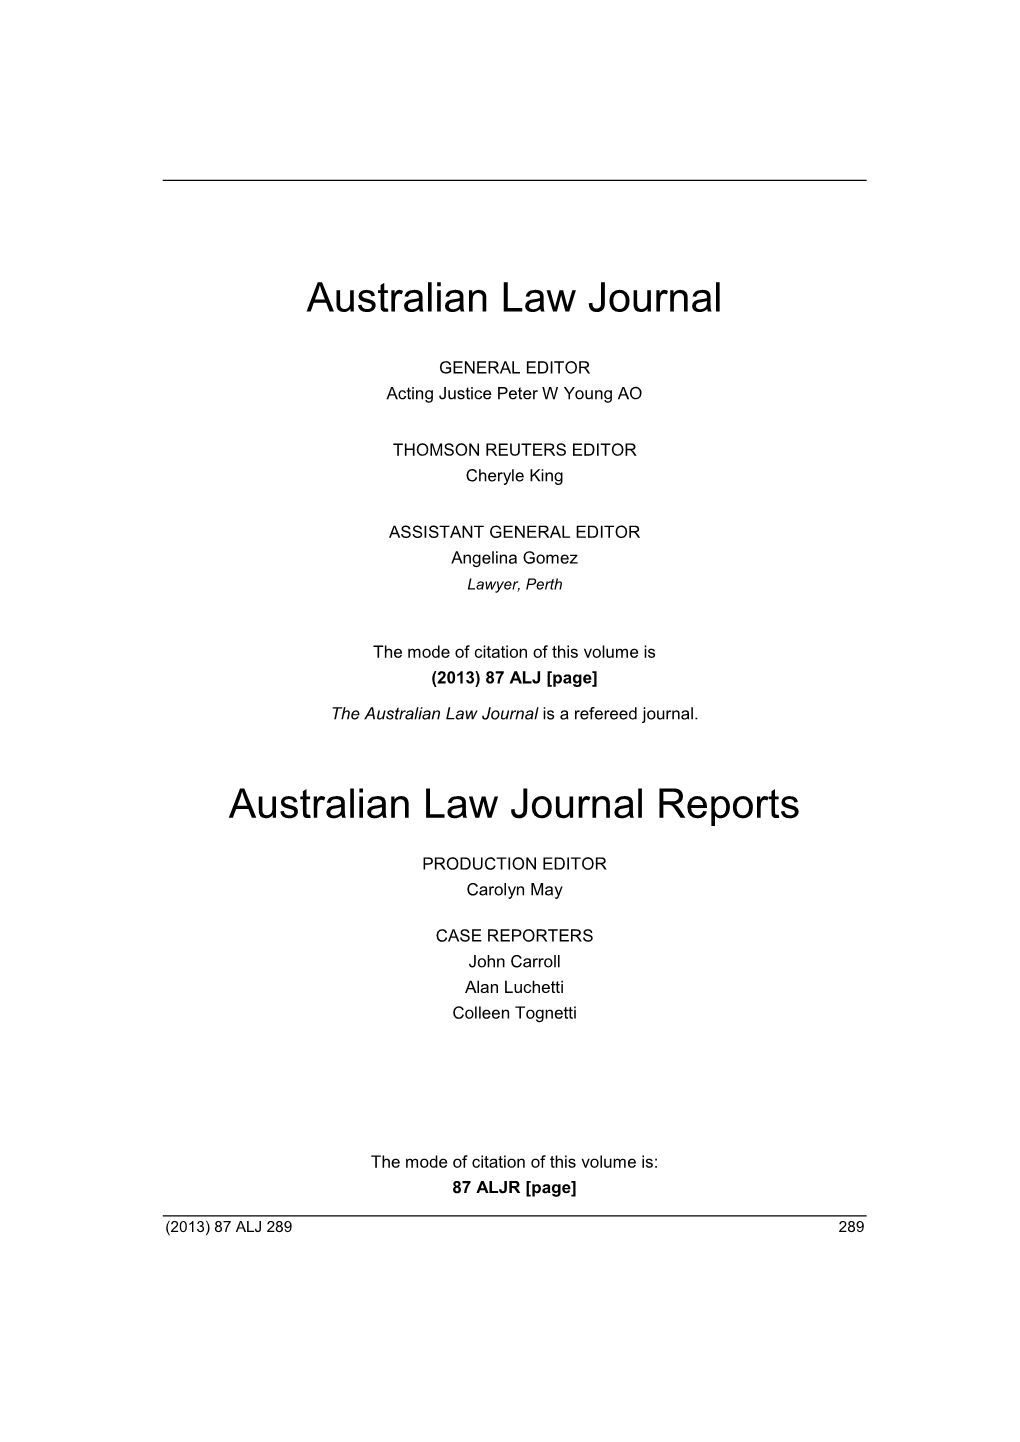 Australian Law Journal Australian Law Journal Reports